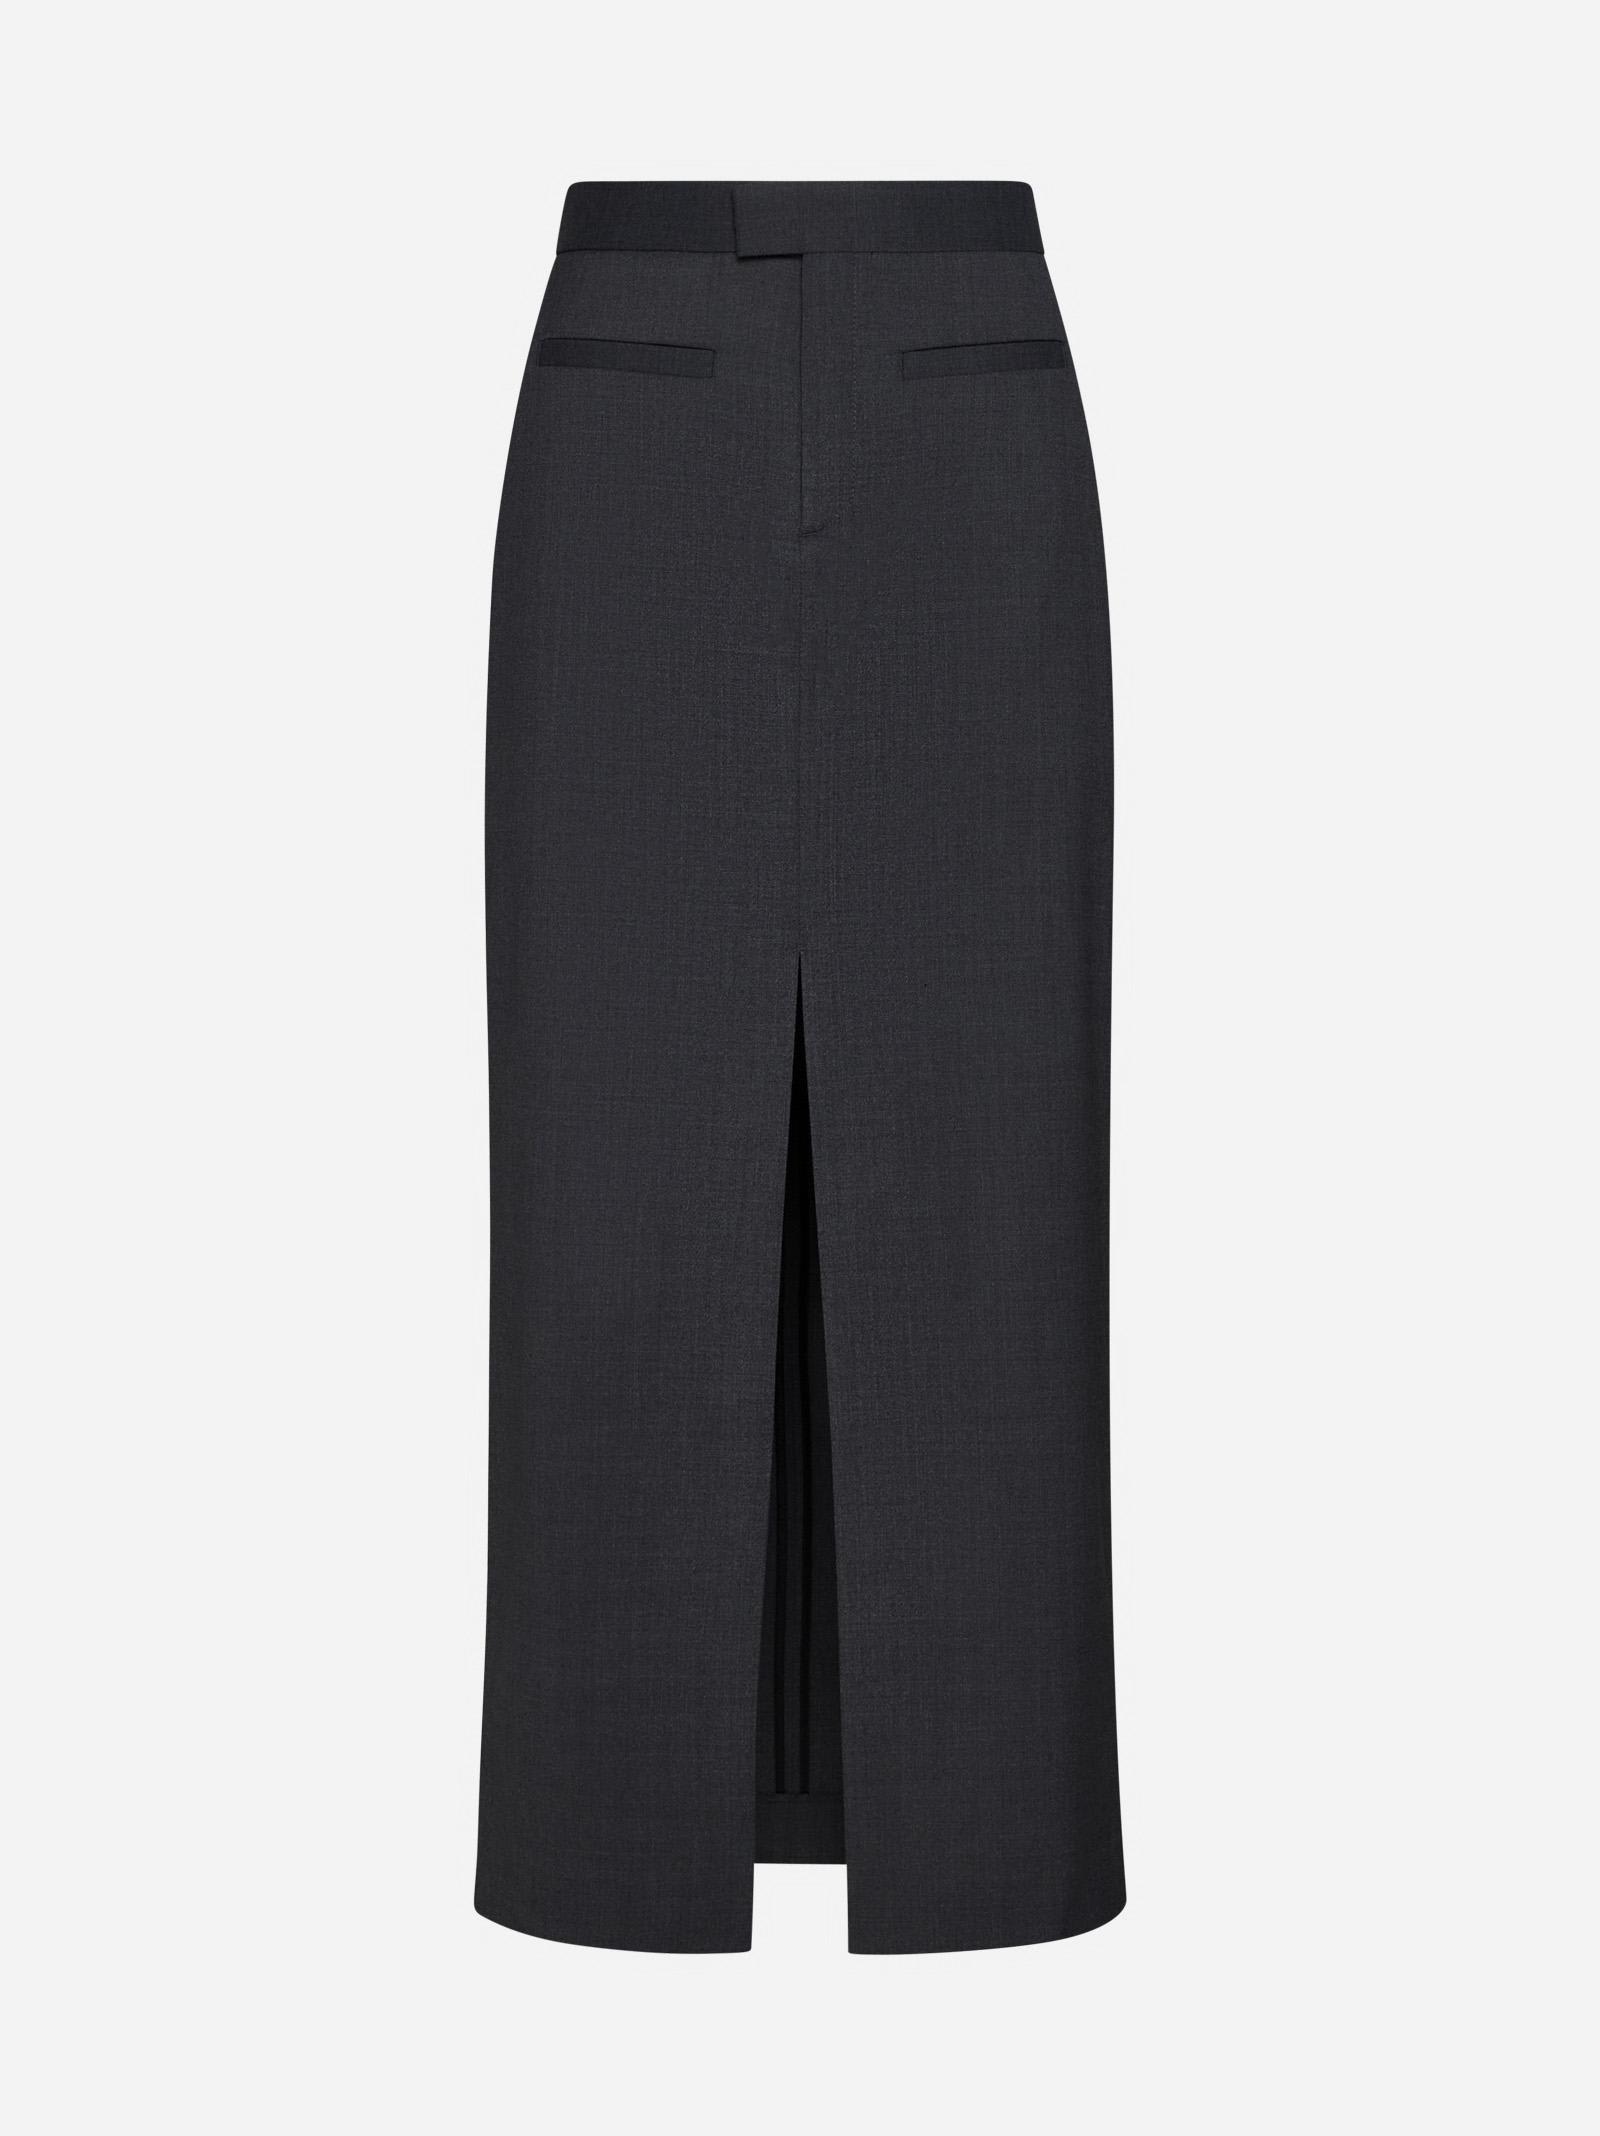 Wool-blend Long Skirt